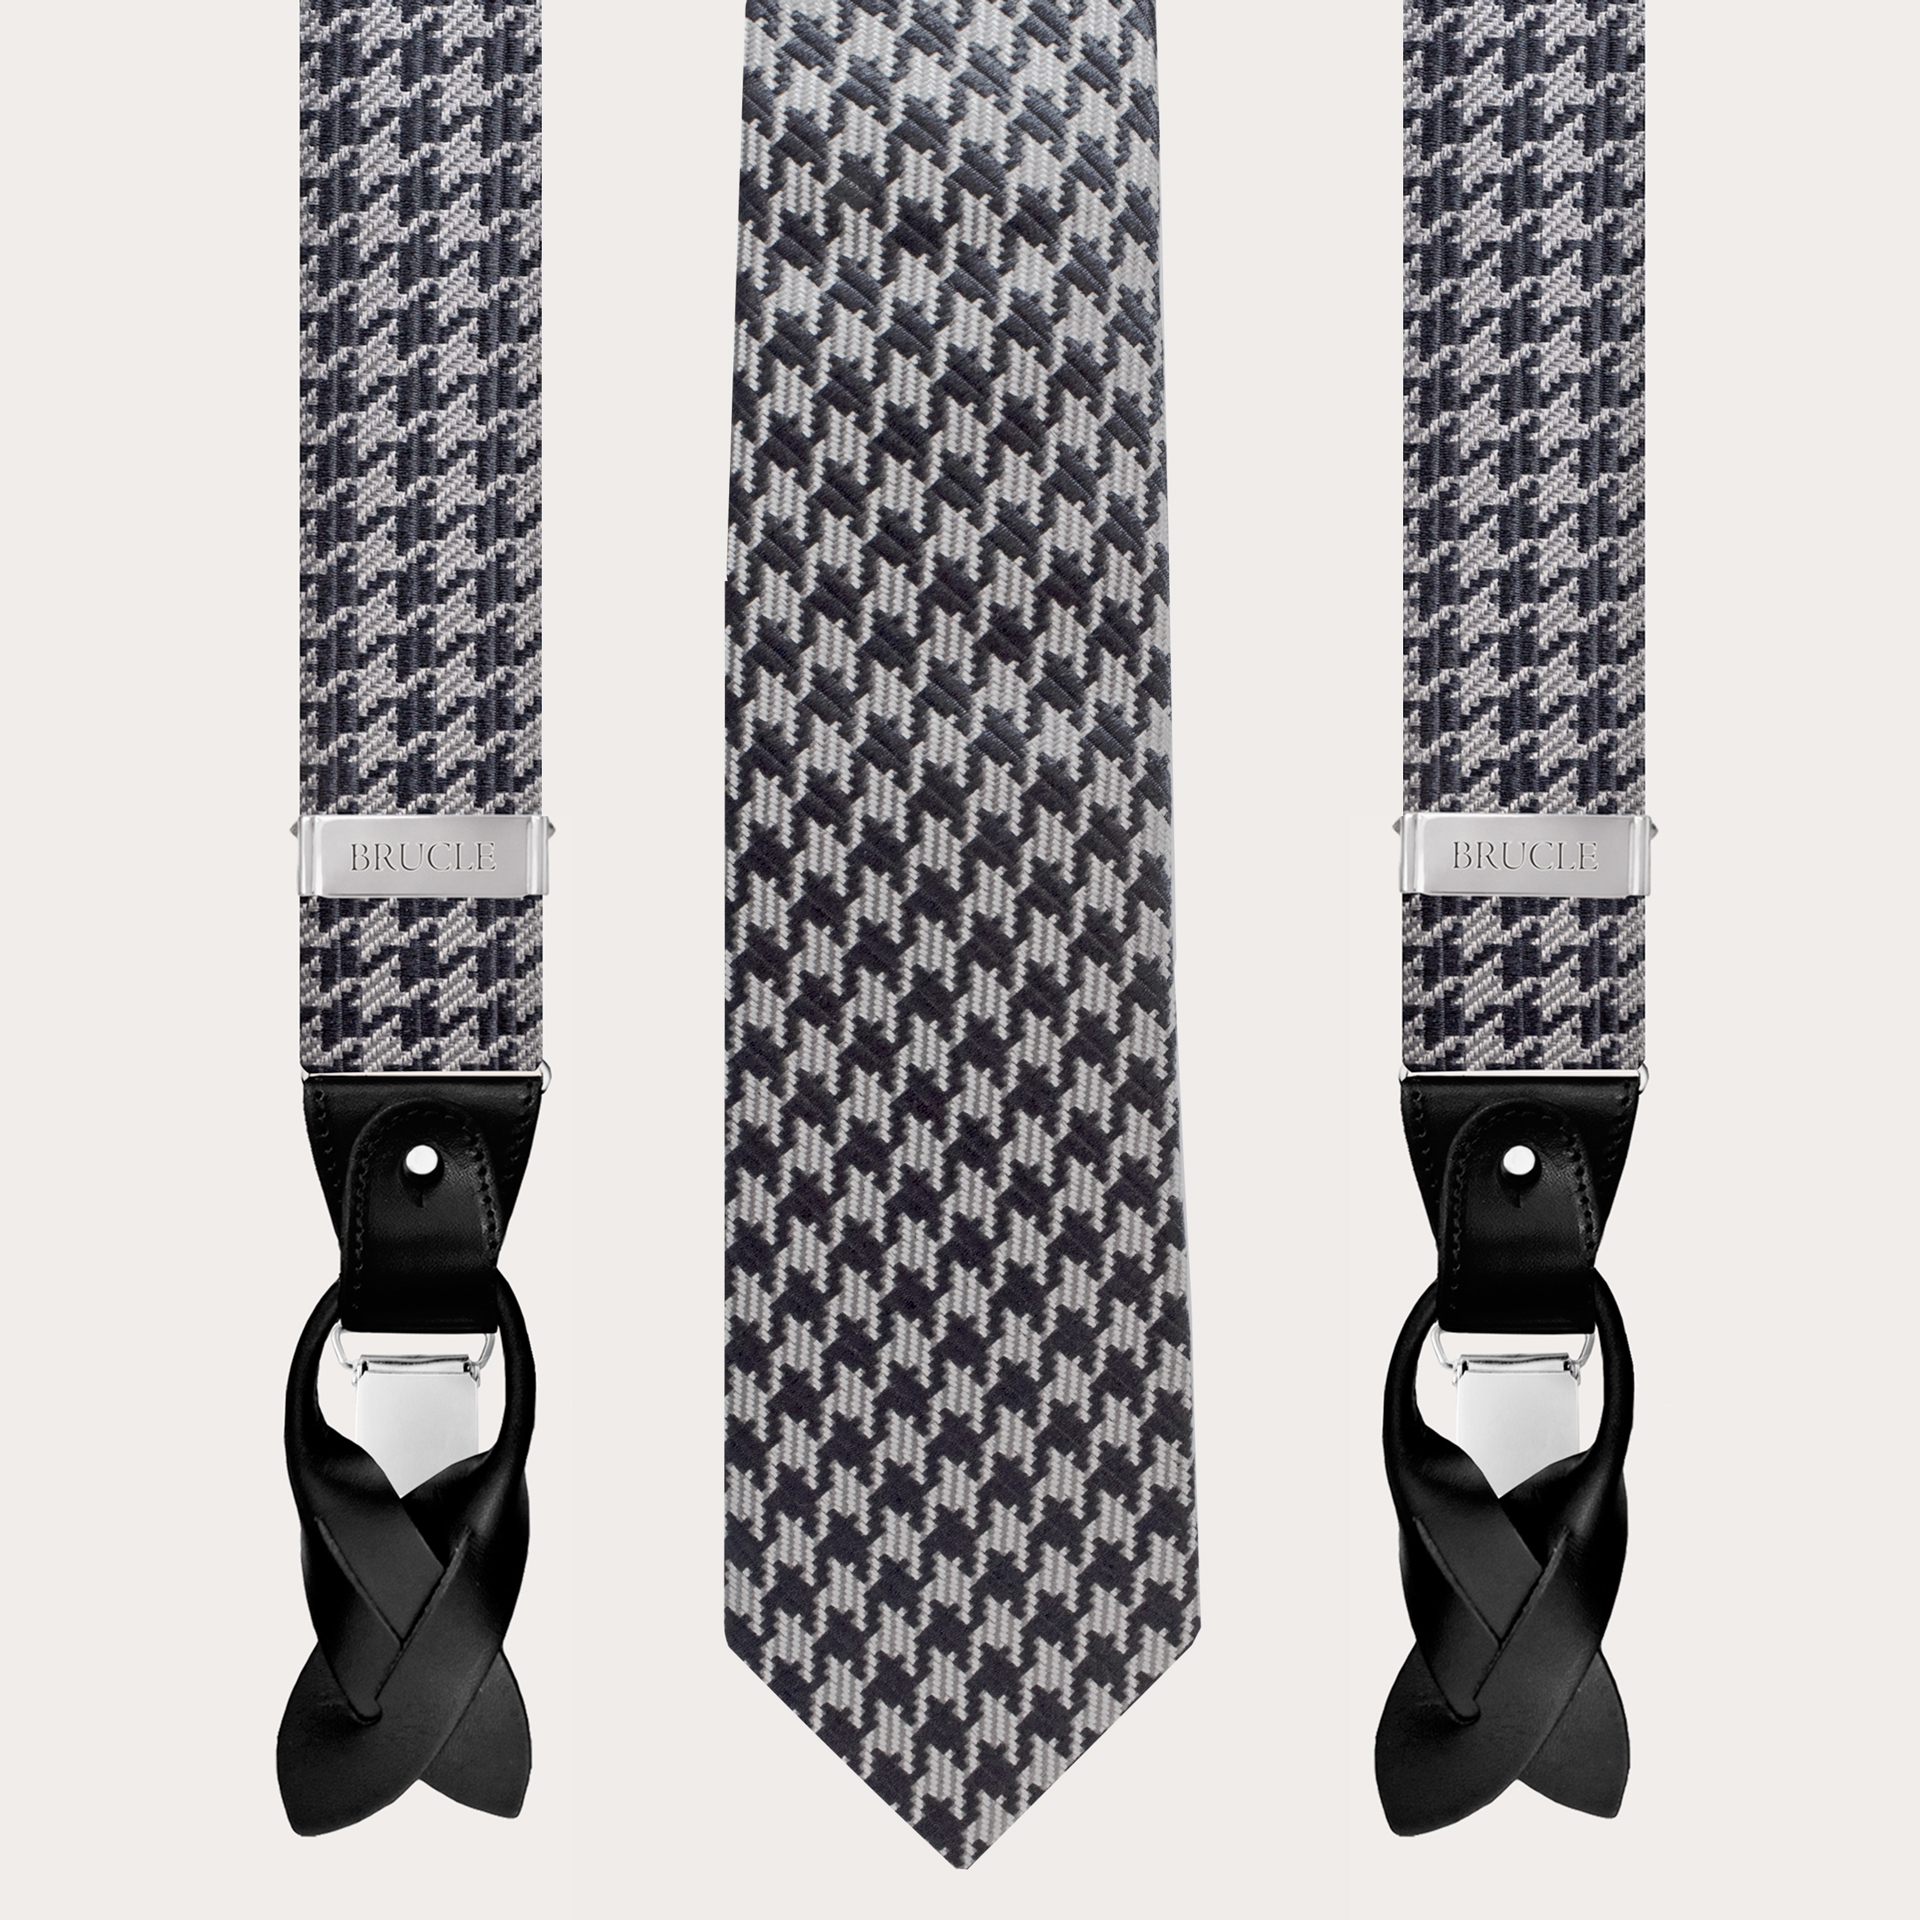 BRUCLE Coordinato bretelle e cravatta in seta jacquard, pied de poule nero